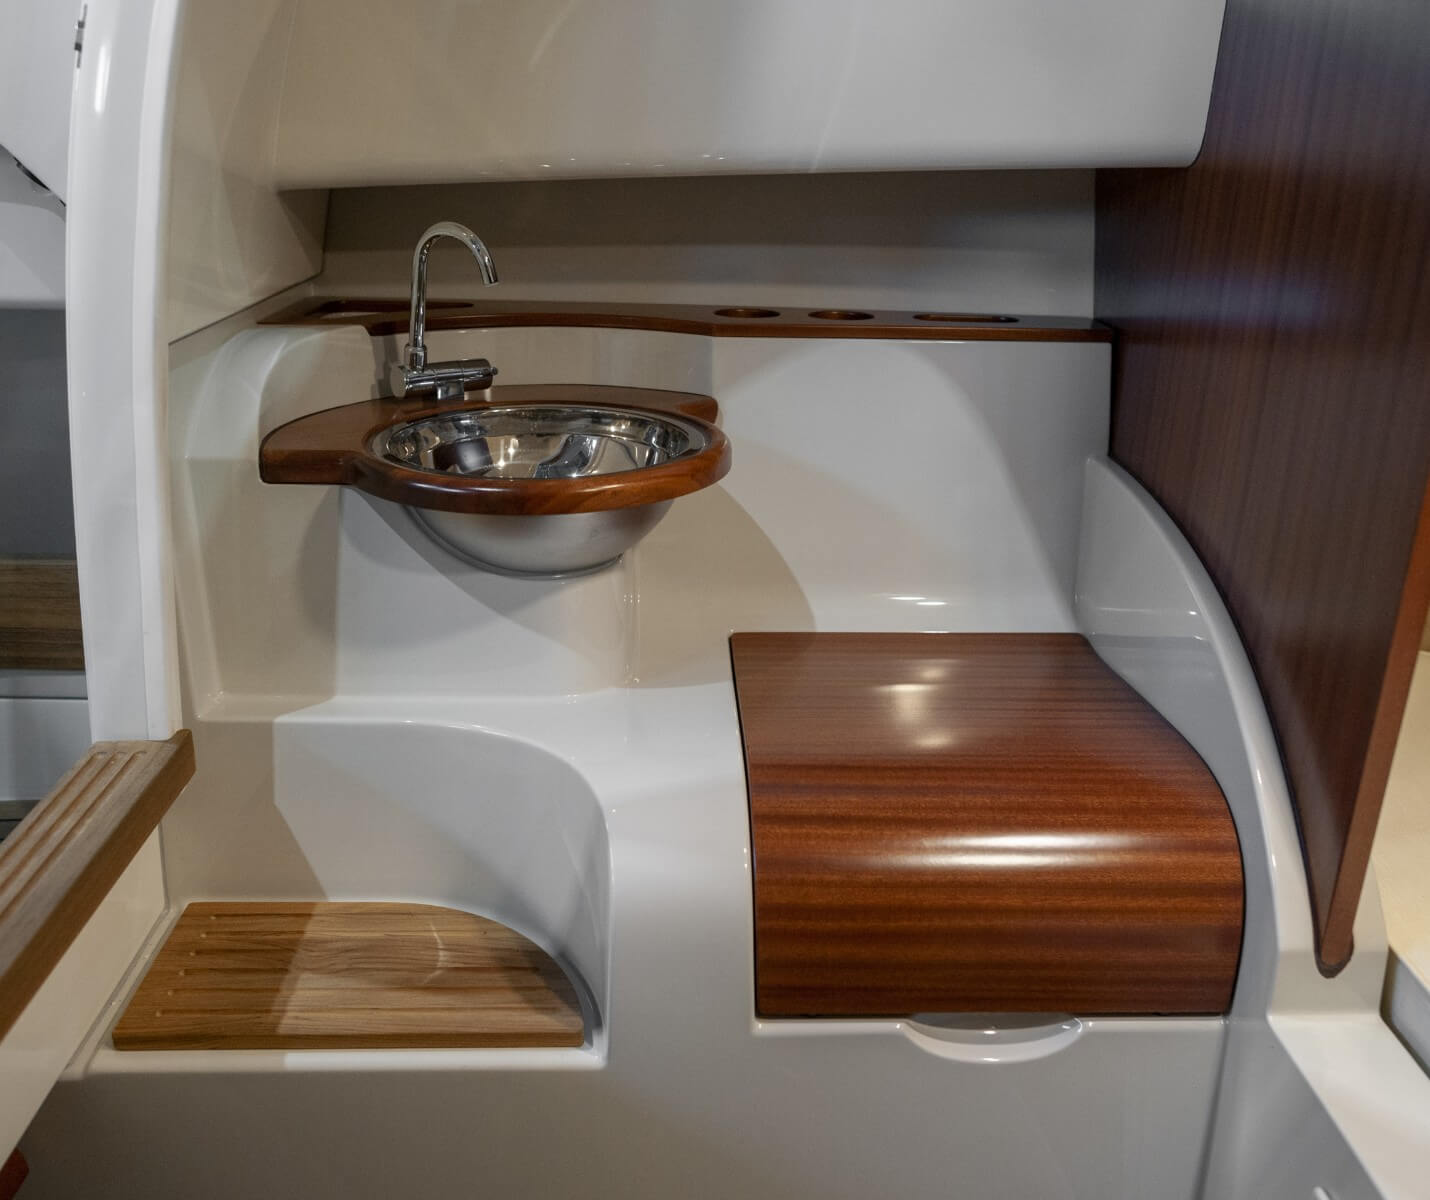 T28-sink-toilet-storage-design@2x